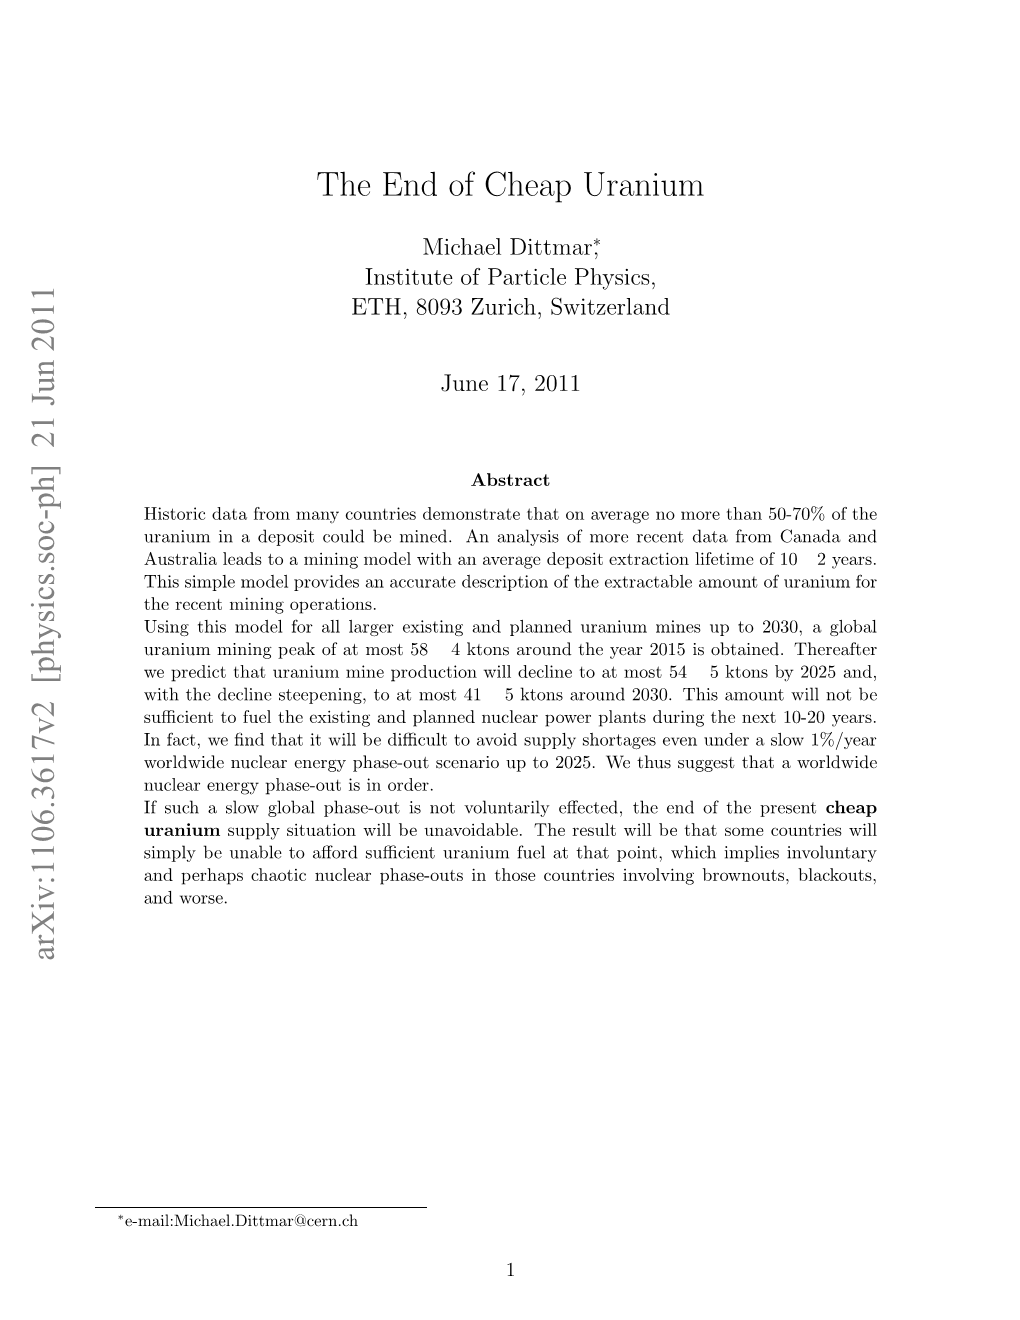 21 Jun 2011 the End of Cheap Uranium